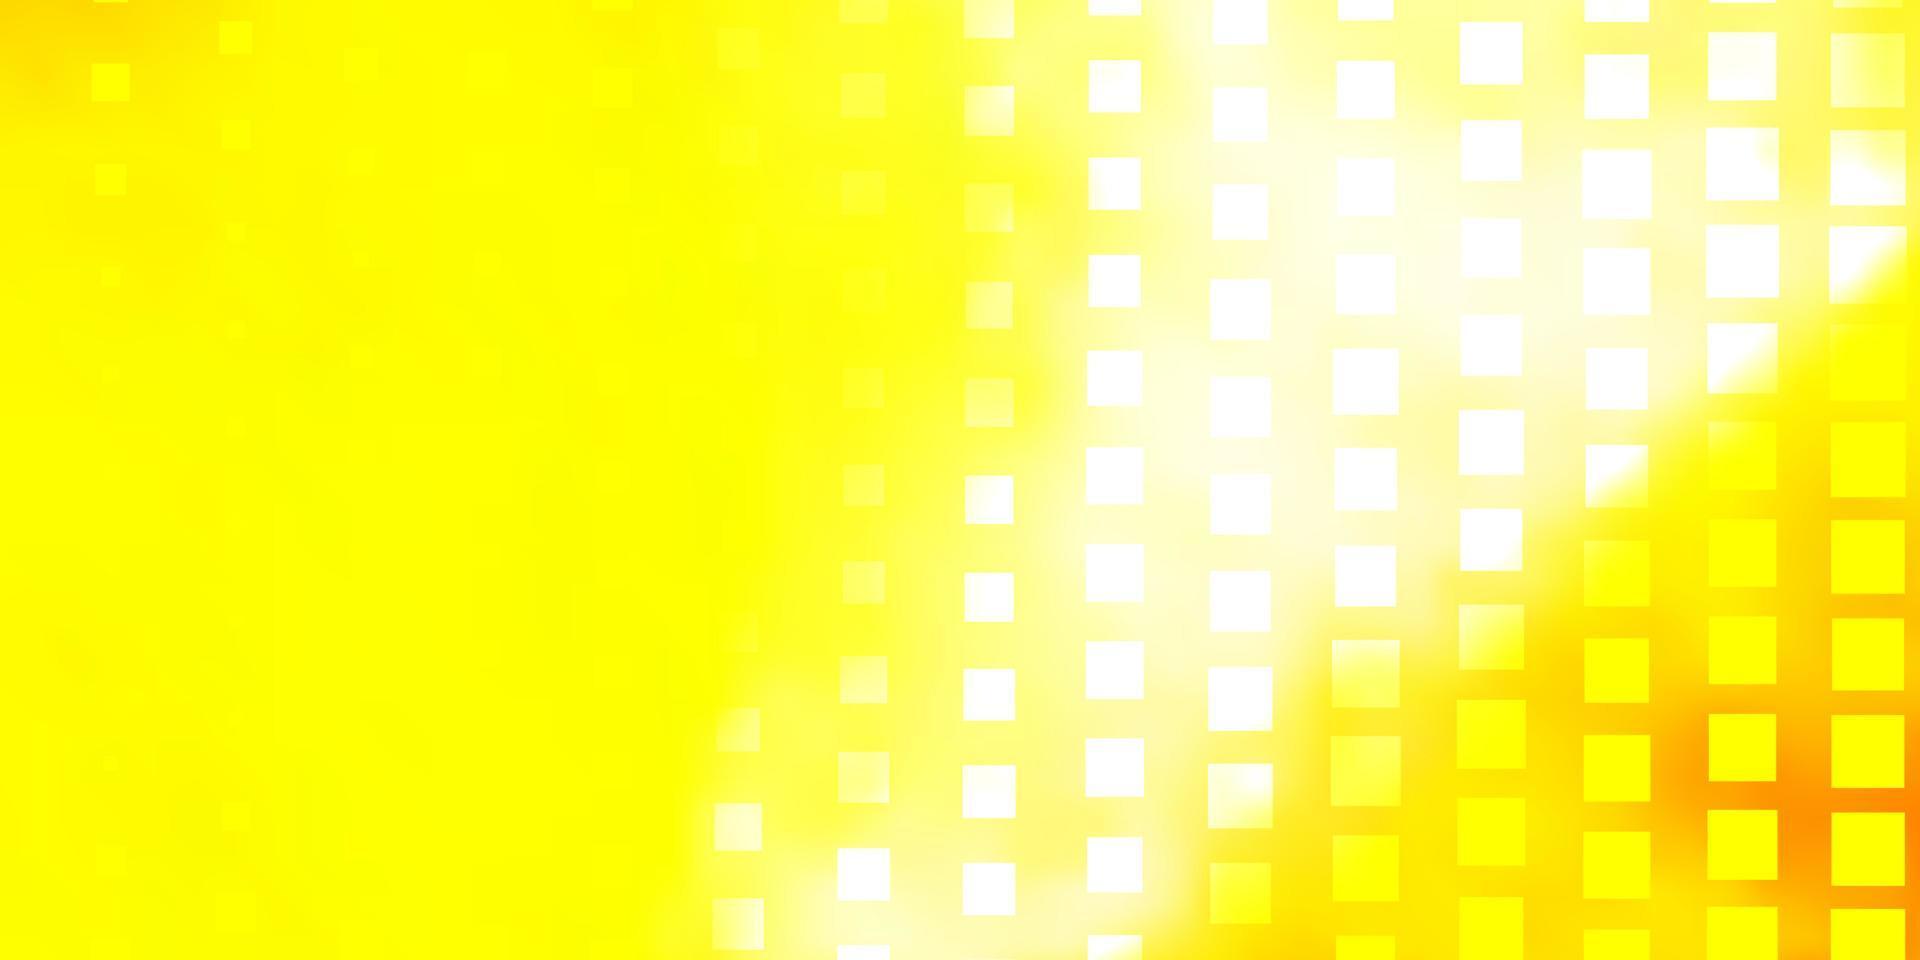 sfondo vettoriale giallo scuro con rettangoli.